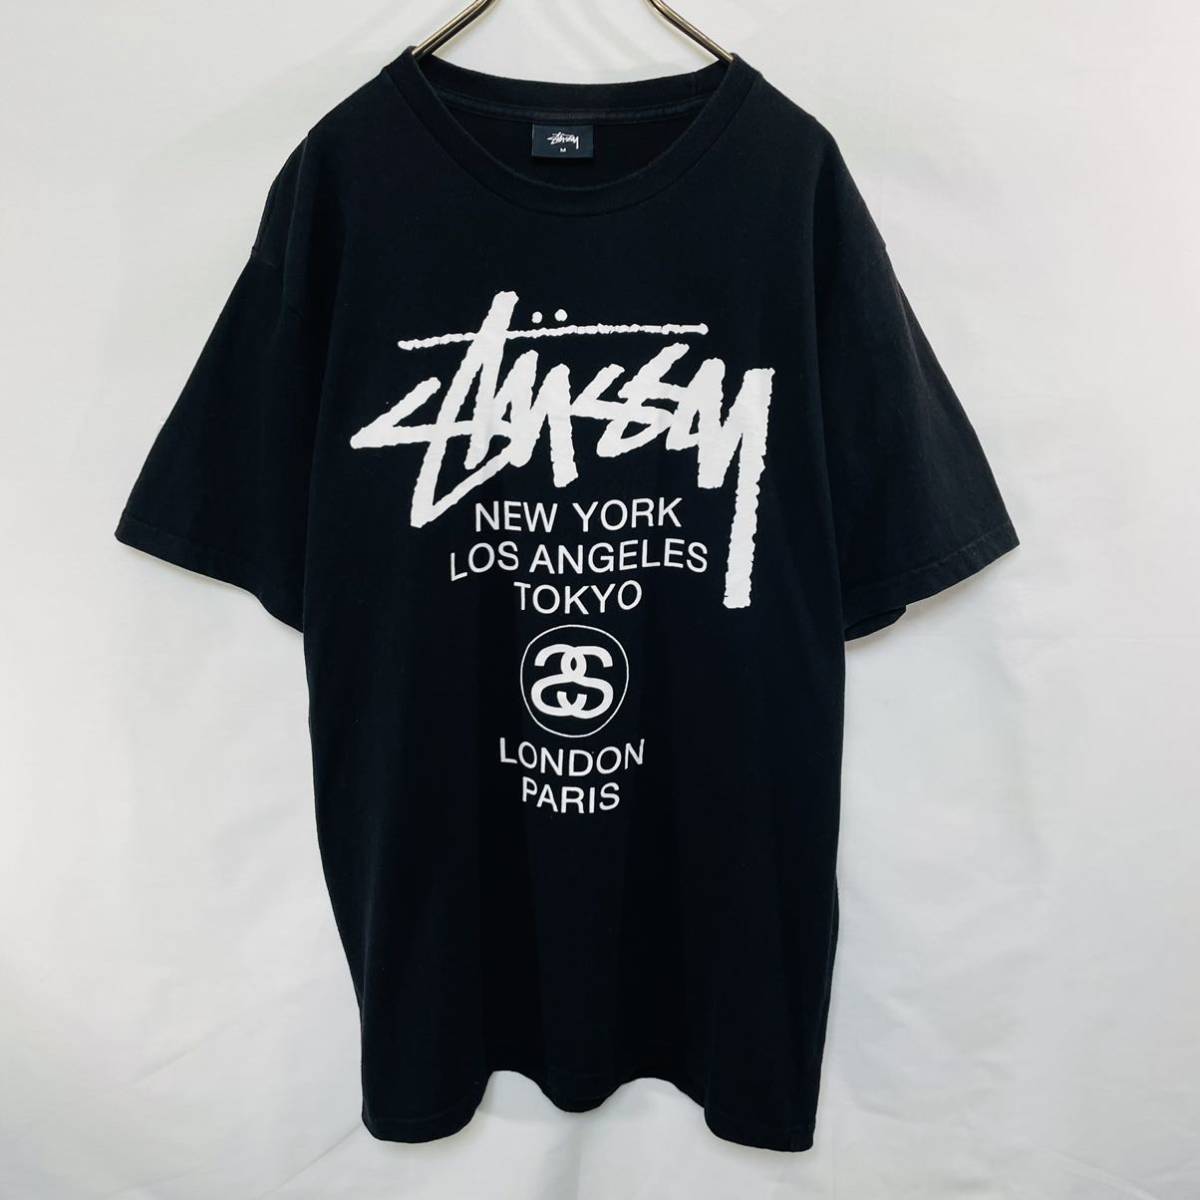 ブランド STUSSY ロゴ Tシャツ 黒 即完売の通販 by ☆SCARERS 